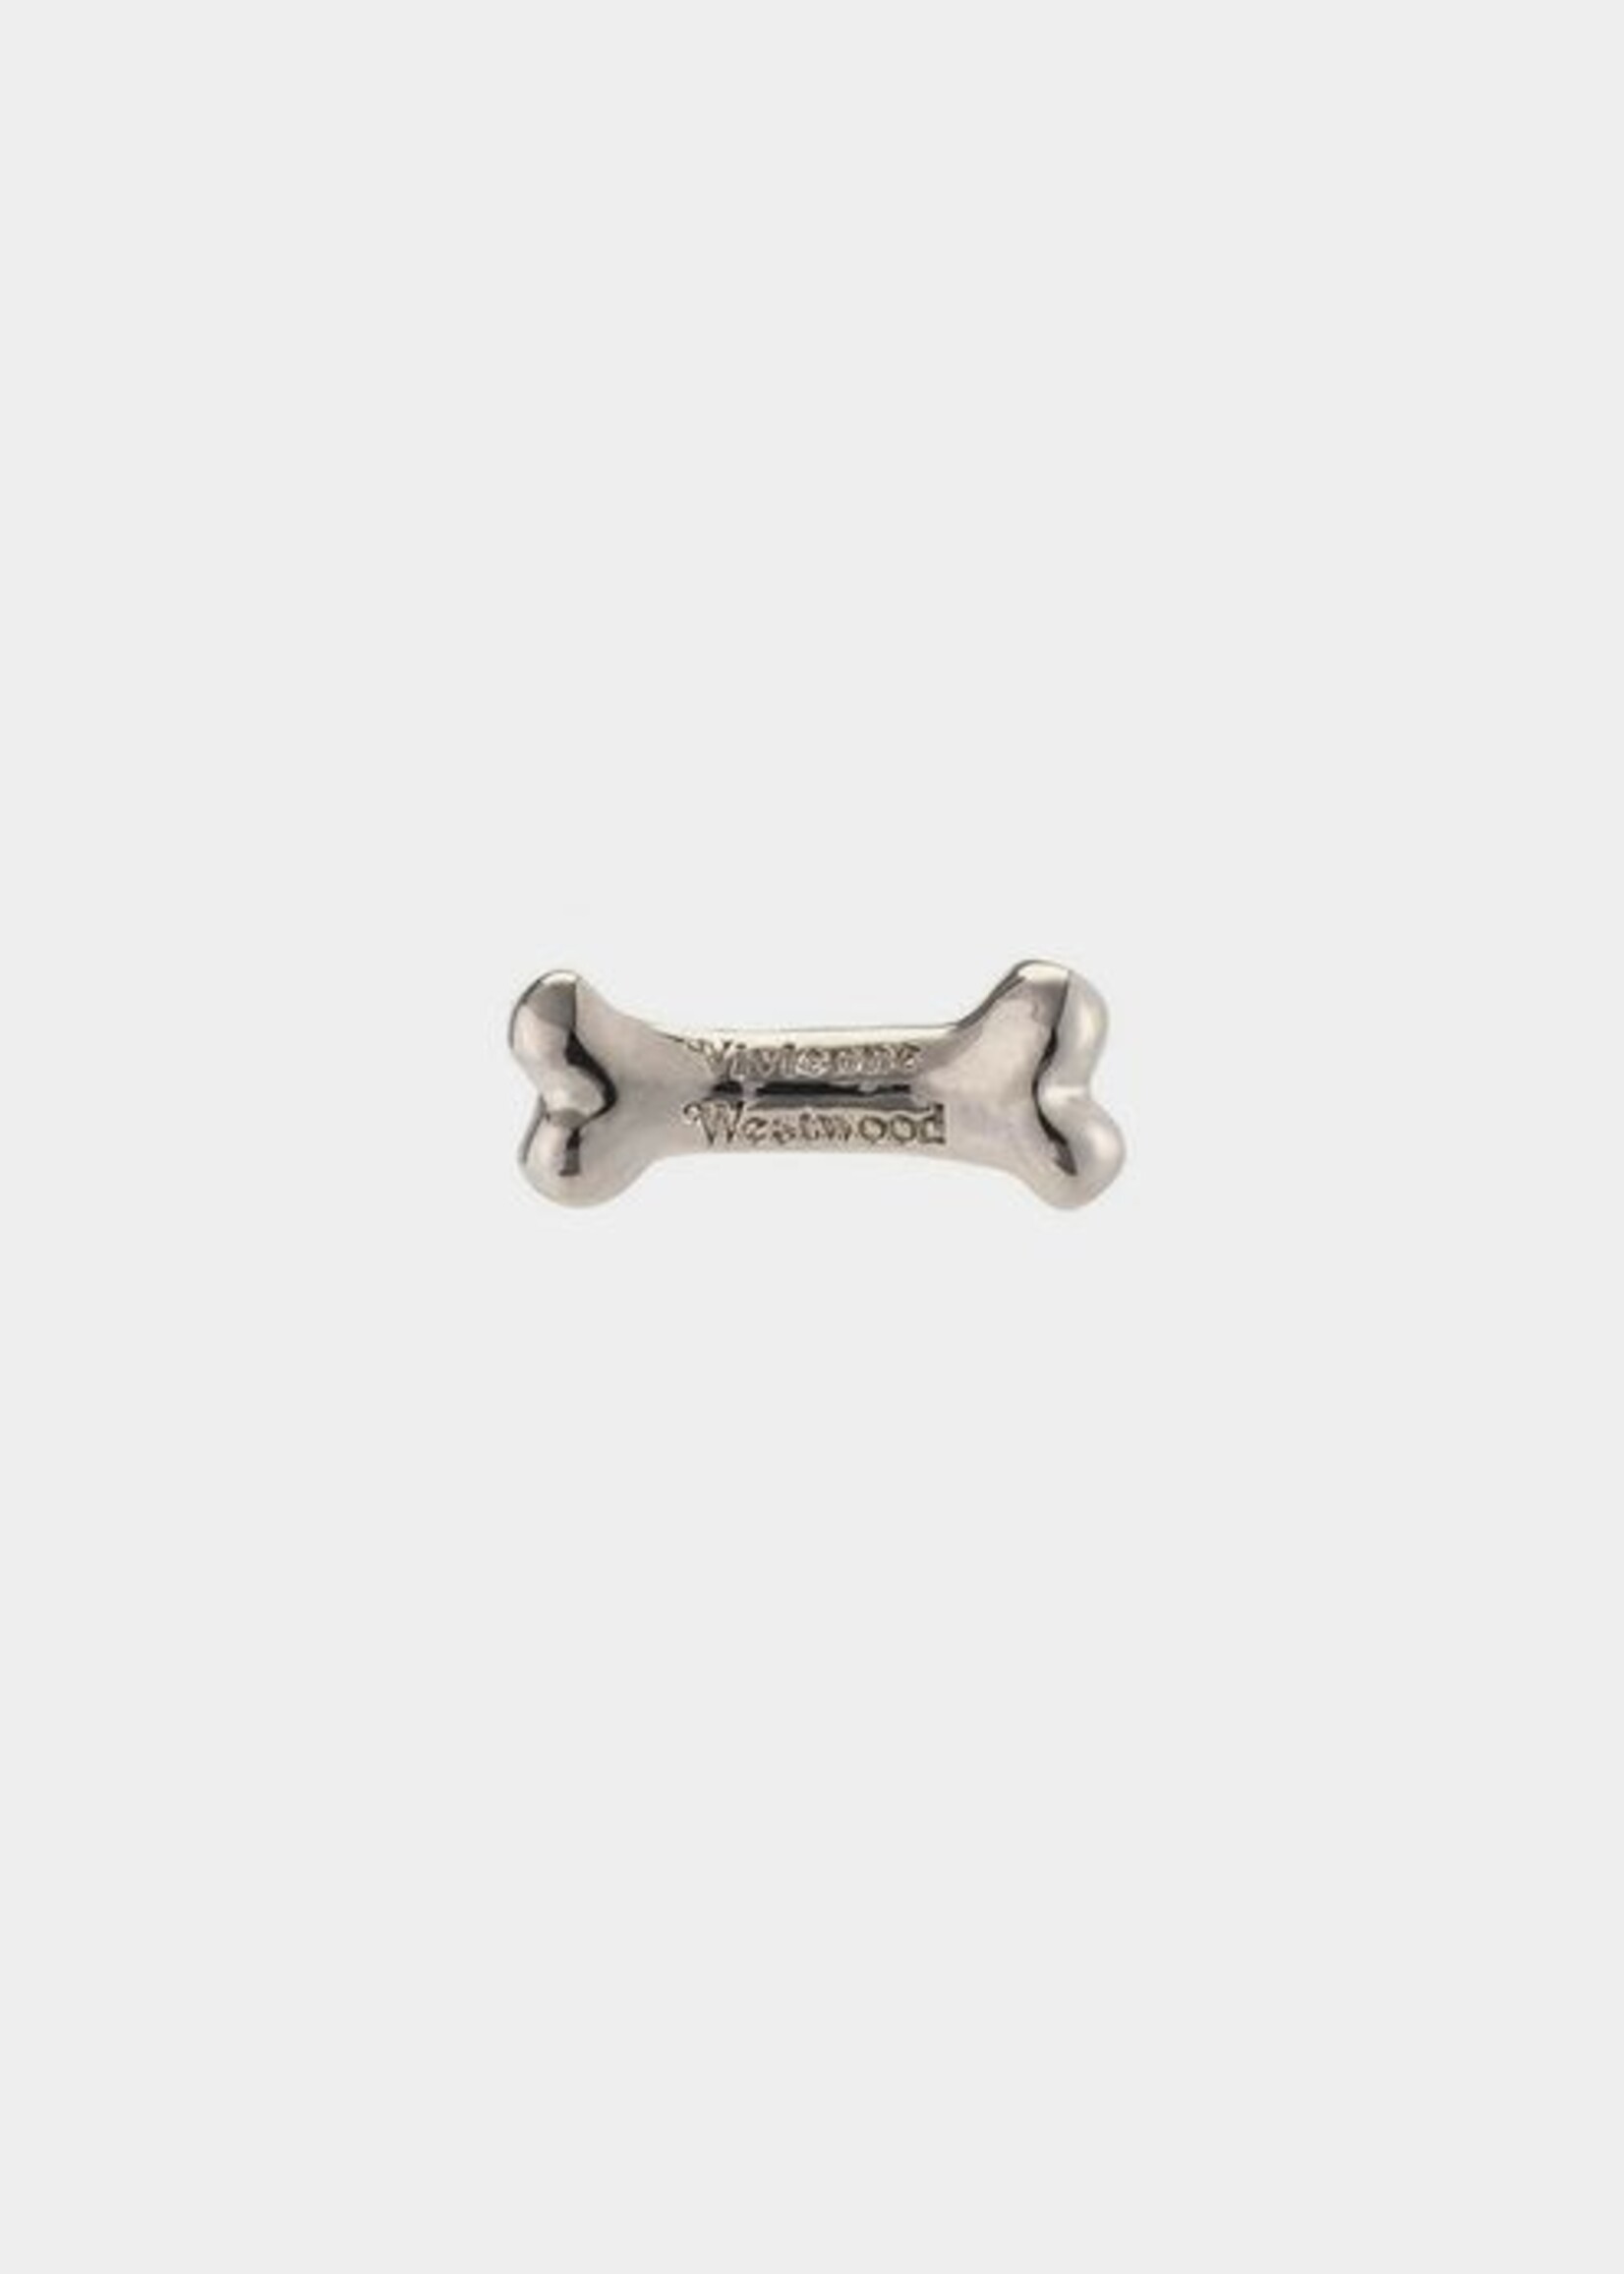 VIVIENNE WESTWOOD Bone Single Earring with Logo  in Silver